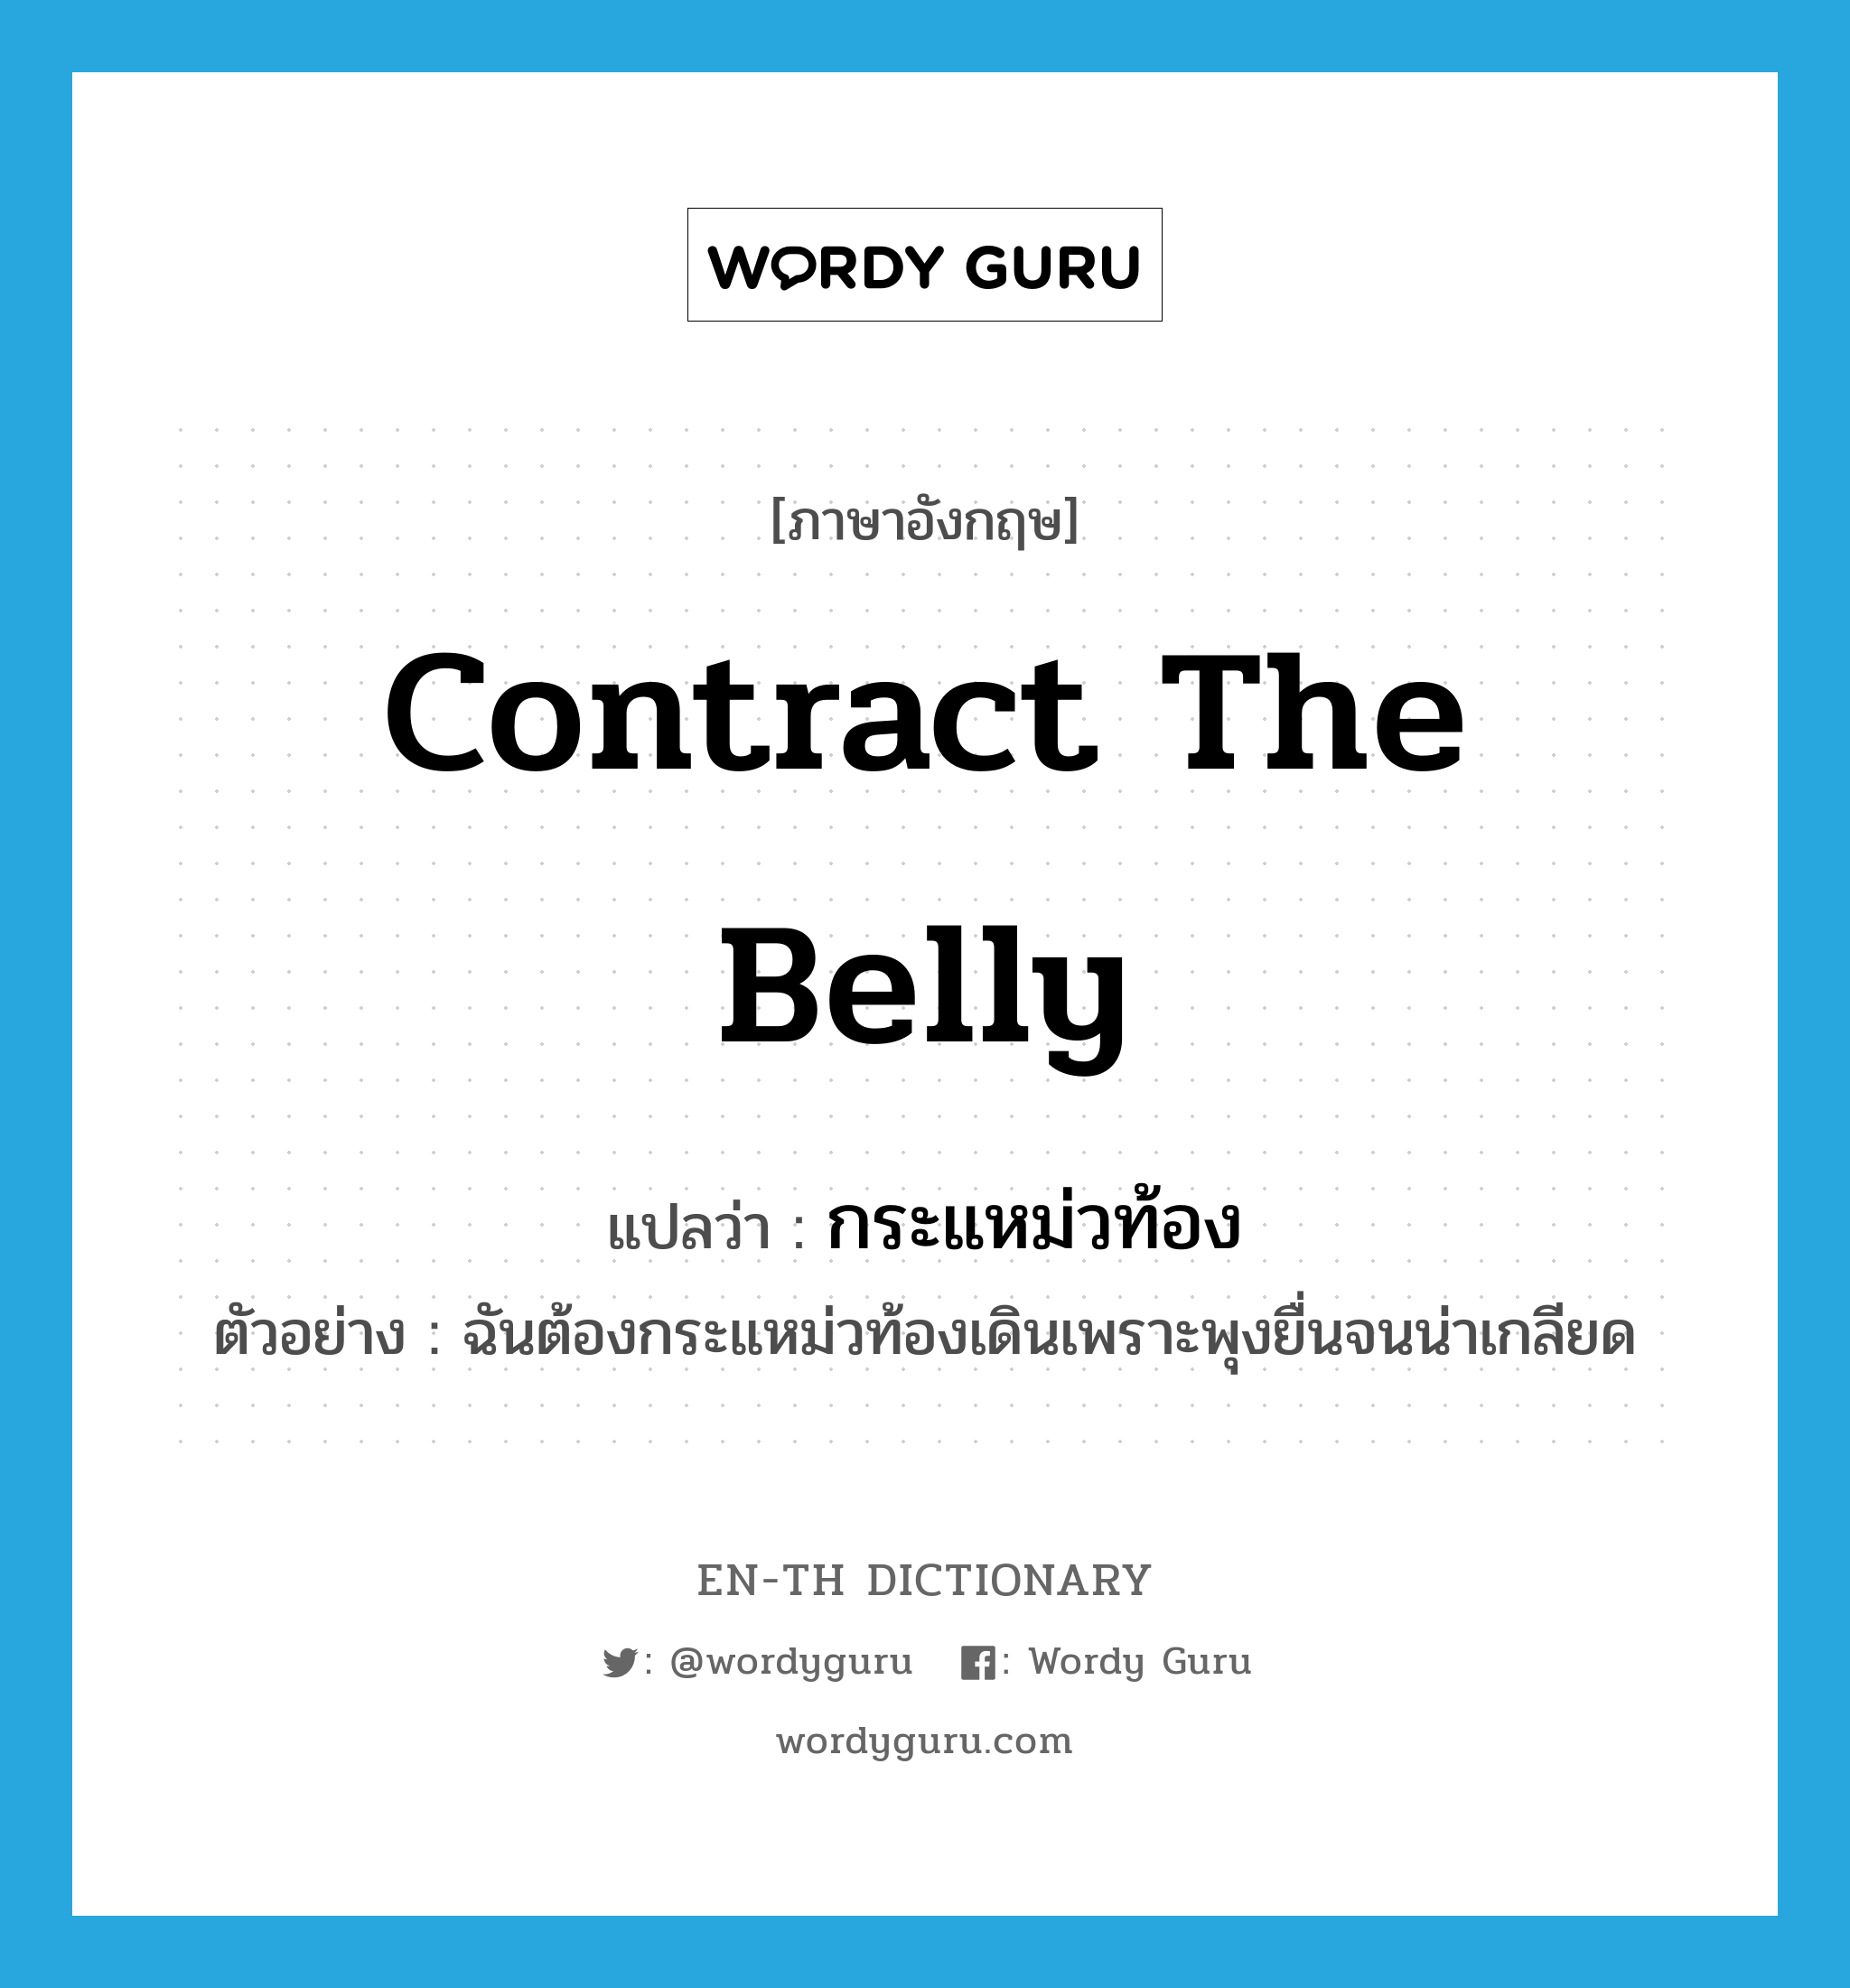 contract the belly แปลว่า?, คำศัพท์ภาษาอังกฤษ contract the belly แปลว่า กระแหม่วท้อง ประเภท V ตัวอย่าง ฉันต้องกระแหม่วท้องเดินเพราะพุงยื่นจนน่าเกลียด หมวด V